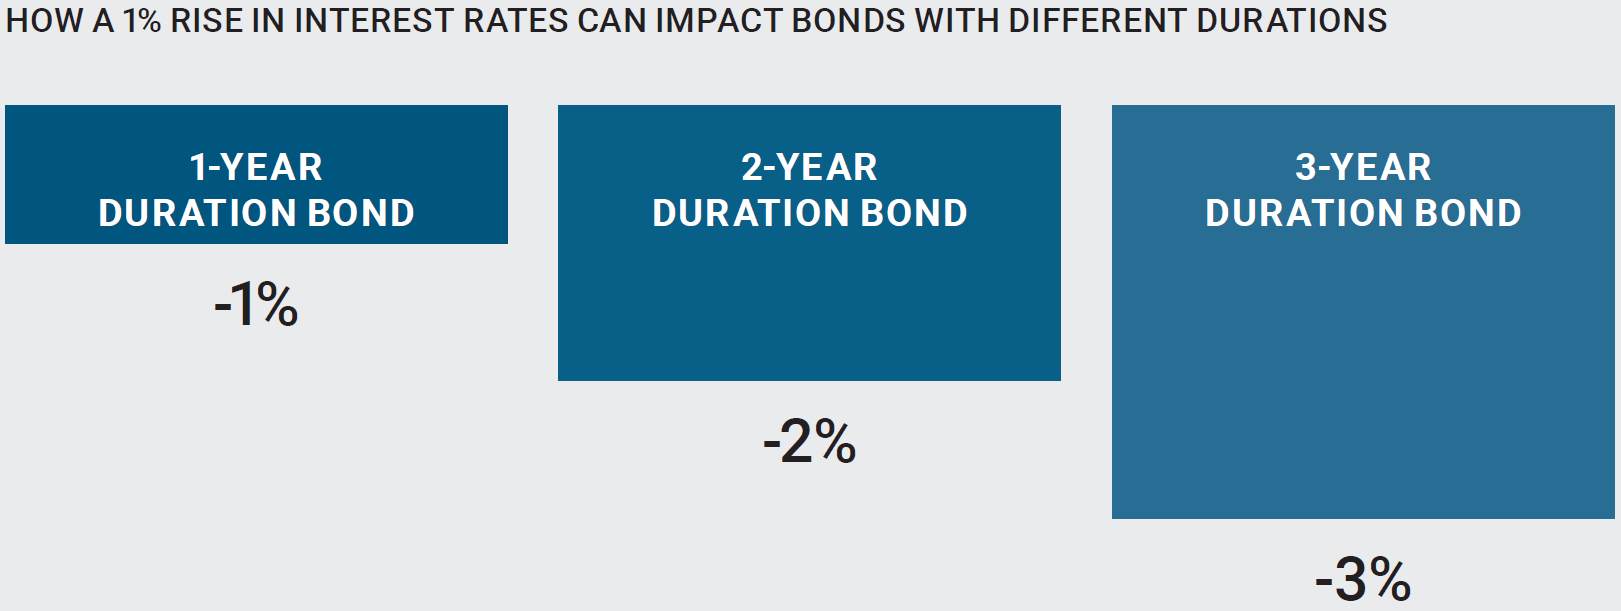 利率上升1%對不同存續期債券的影響